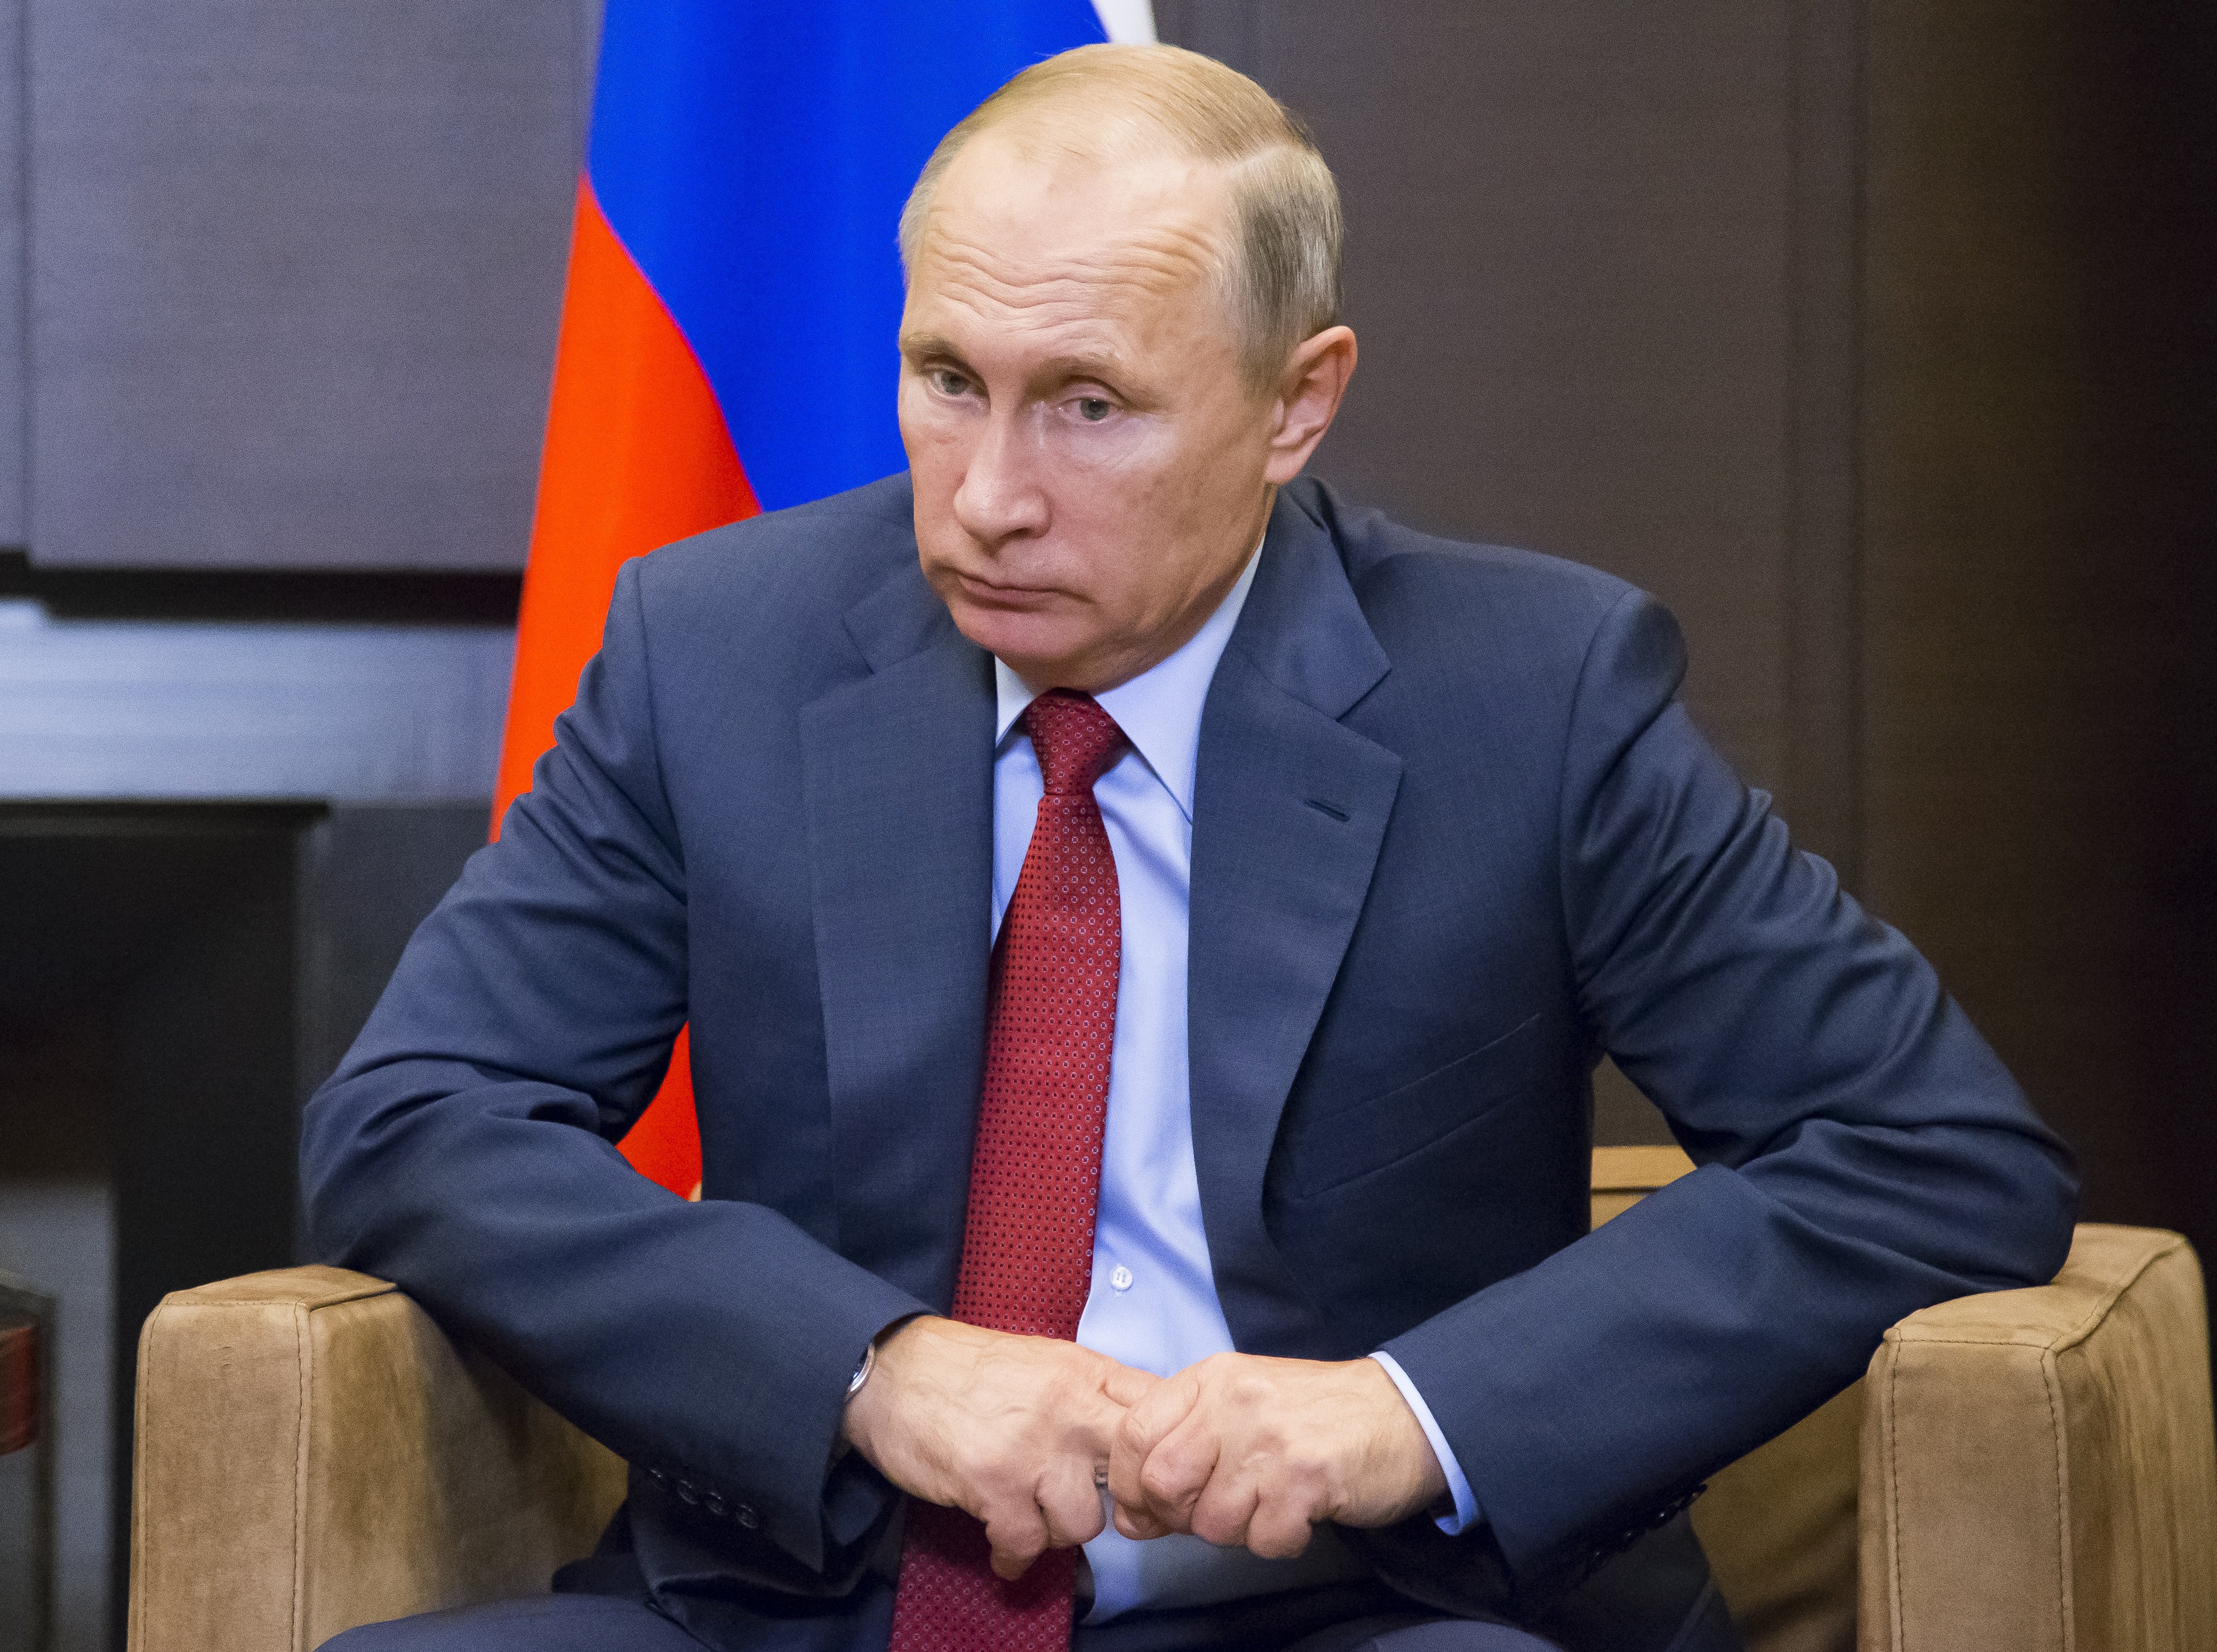 Ρωσία: Το Κρεμλίνο θεωρεί ότι το ζήτημα του Ναβάλνι έχει εξαντληθεί